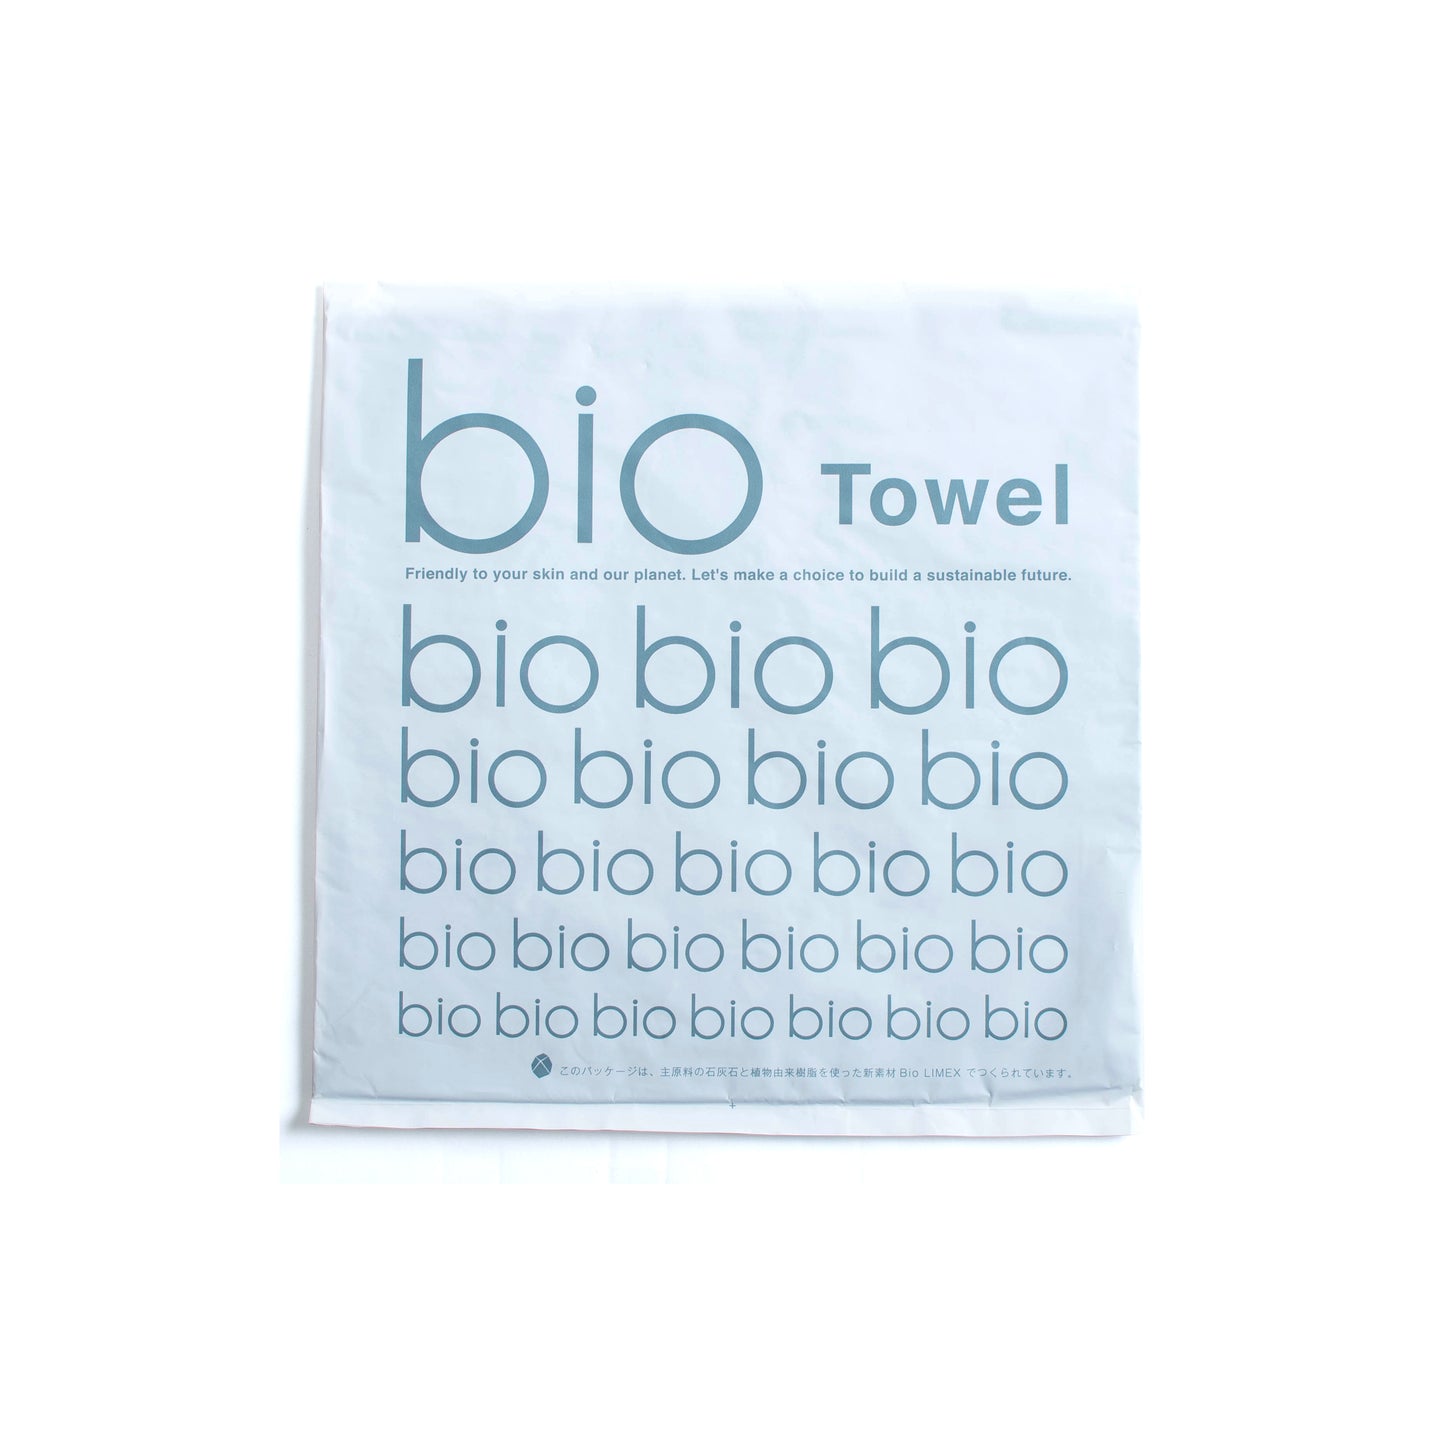 bio Towel Handkerchief